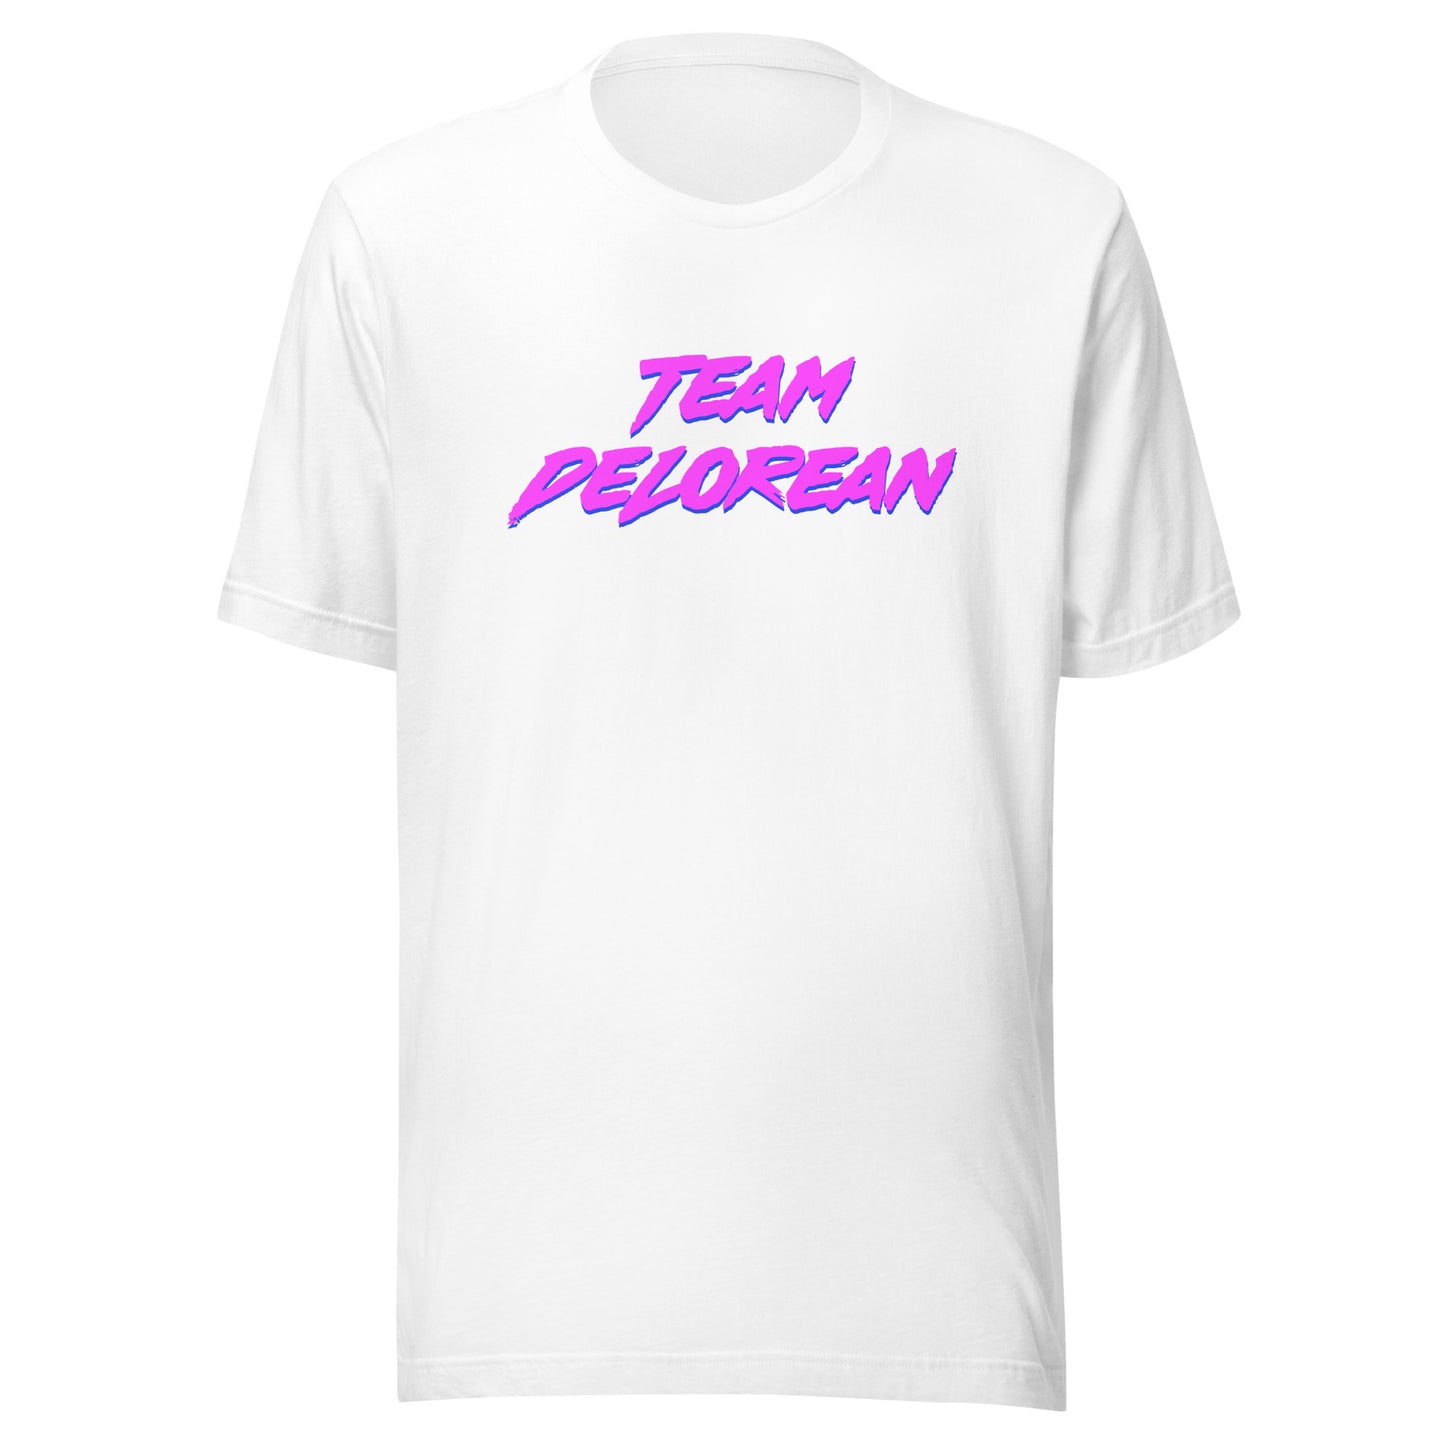 Neon Team DeLorean T-shirt